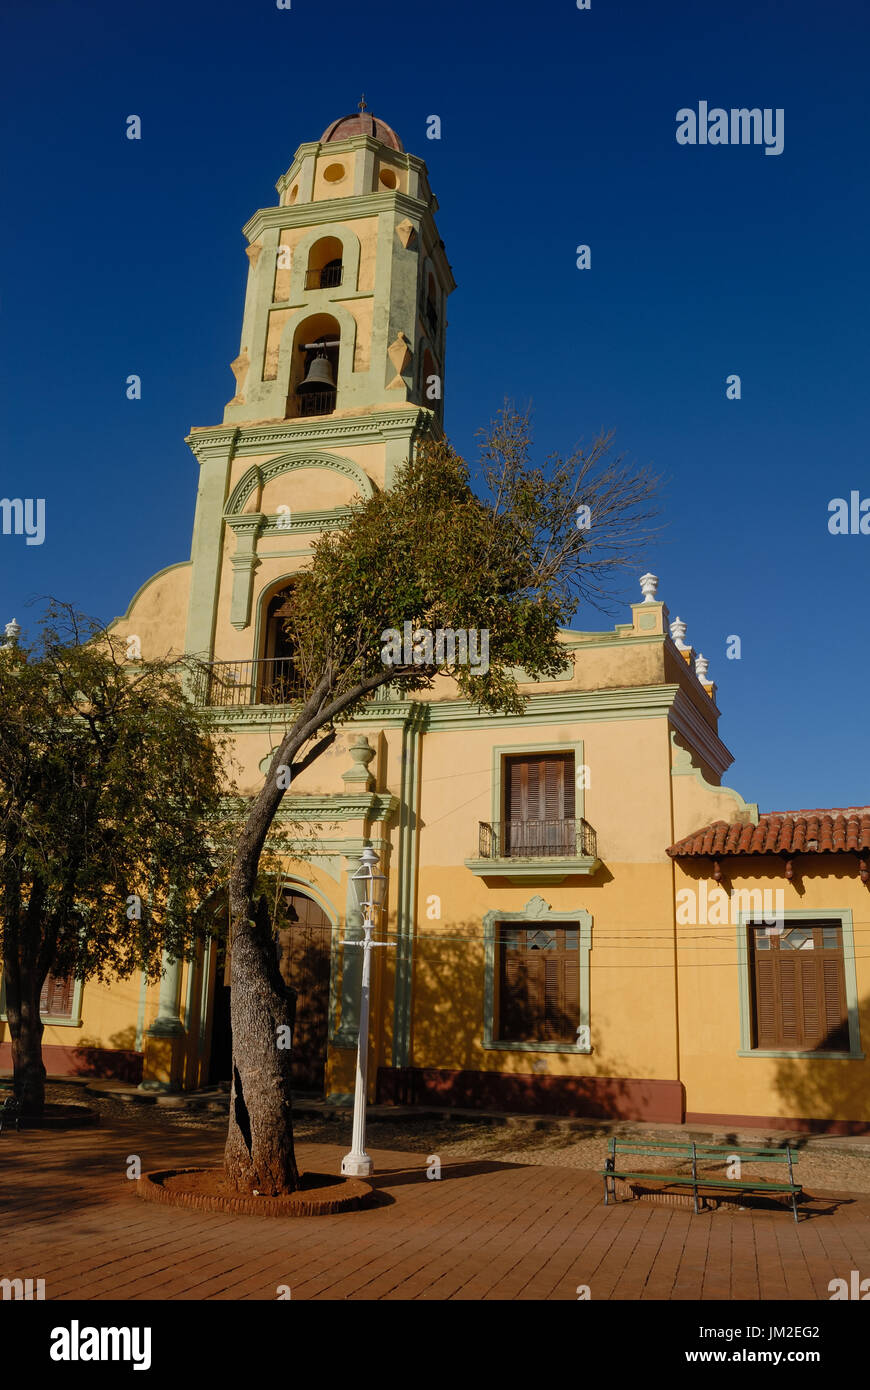 Der Kirchturm von dem Platz in Trinidad, Kuba mit Bank und Baum vor der Kirche. Stockfoto